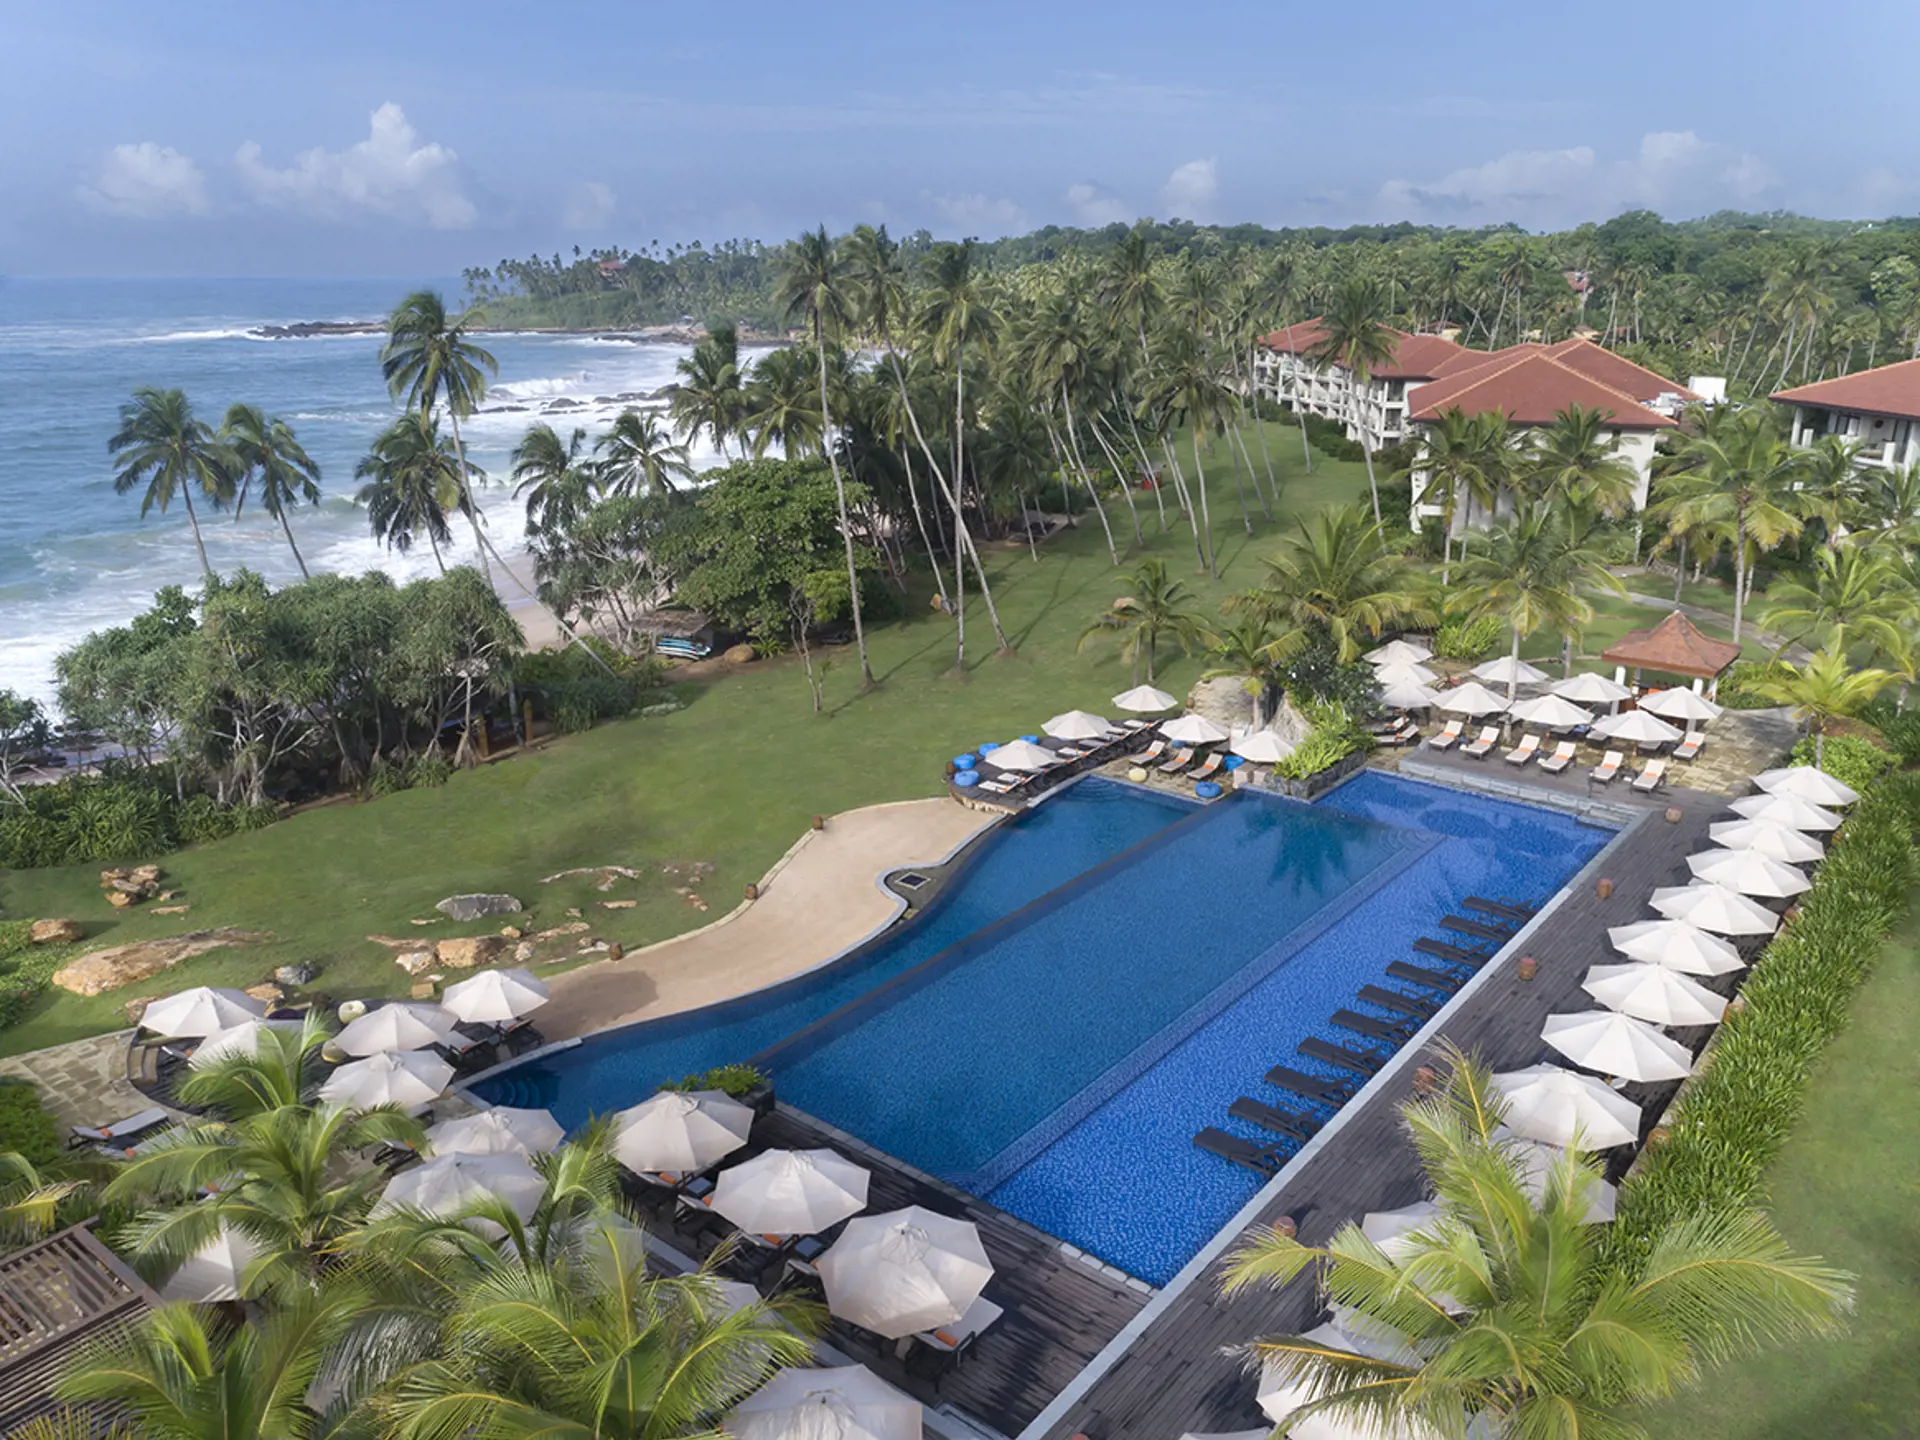 POOL - Hotellets store pool er elegant udformet og ligger i dejlige grønne omgivelser. 